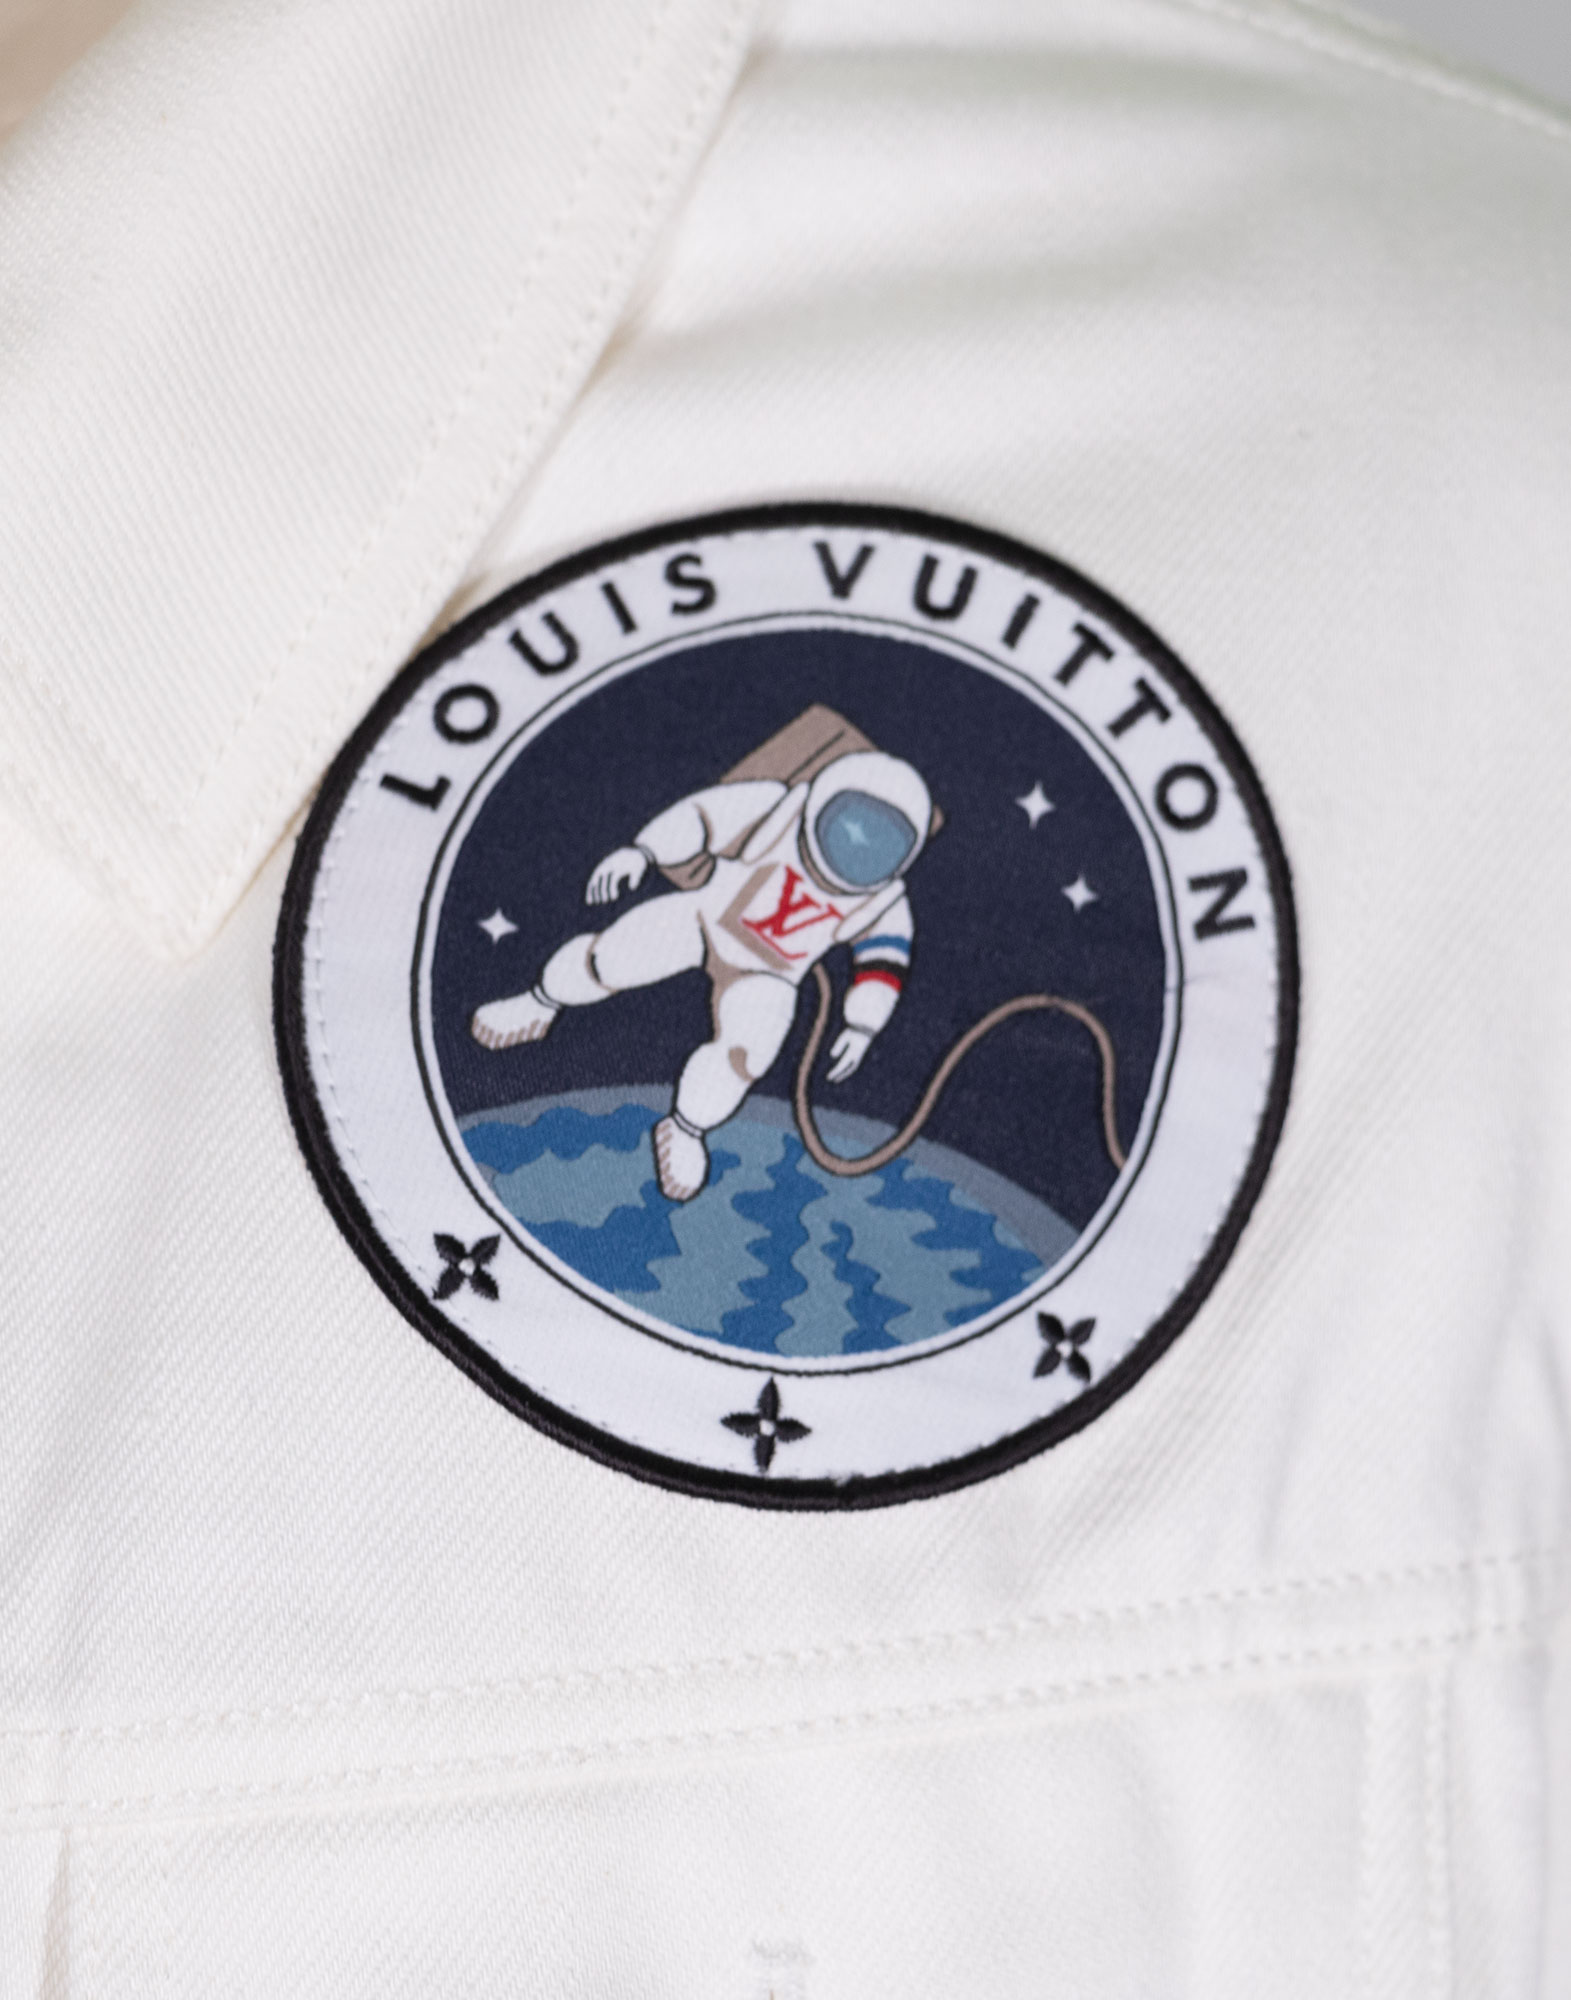 Louis Vuitton - Denim jacket 2019 collection